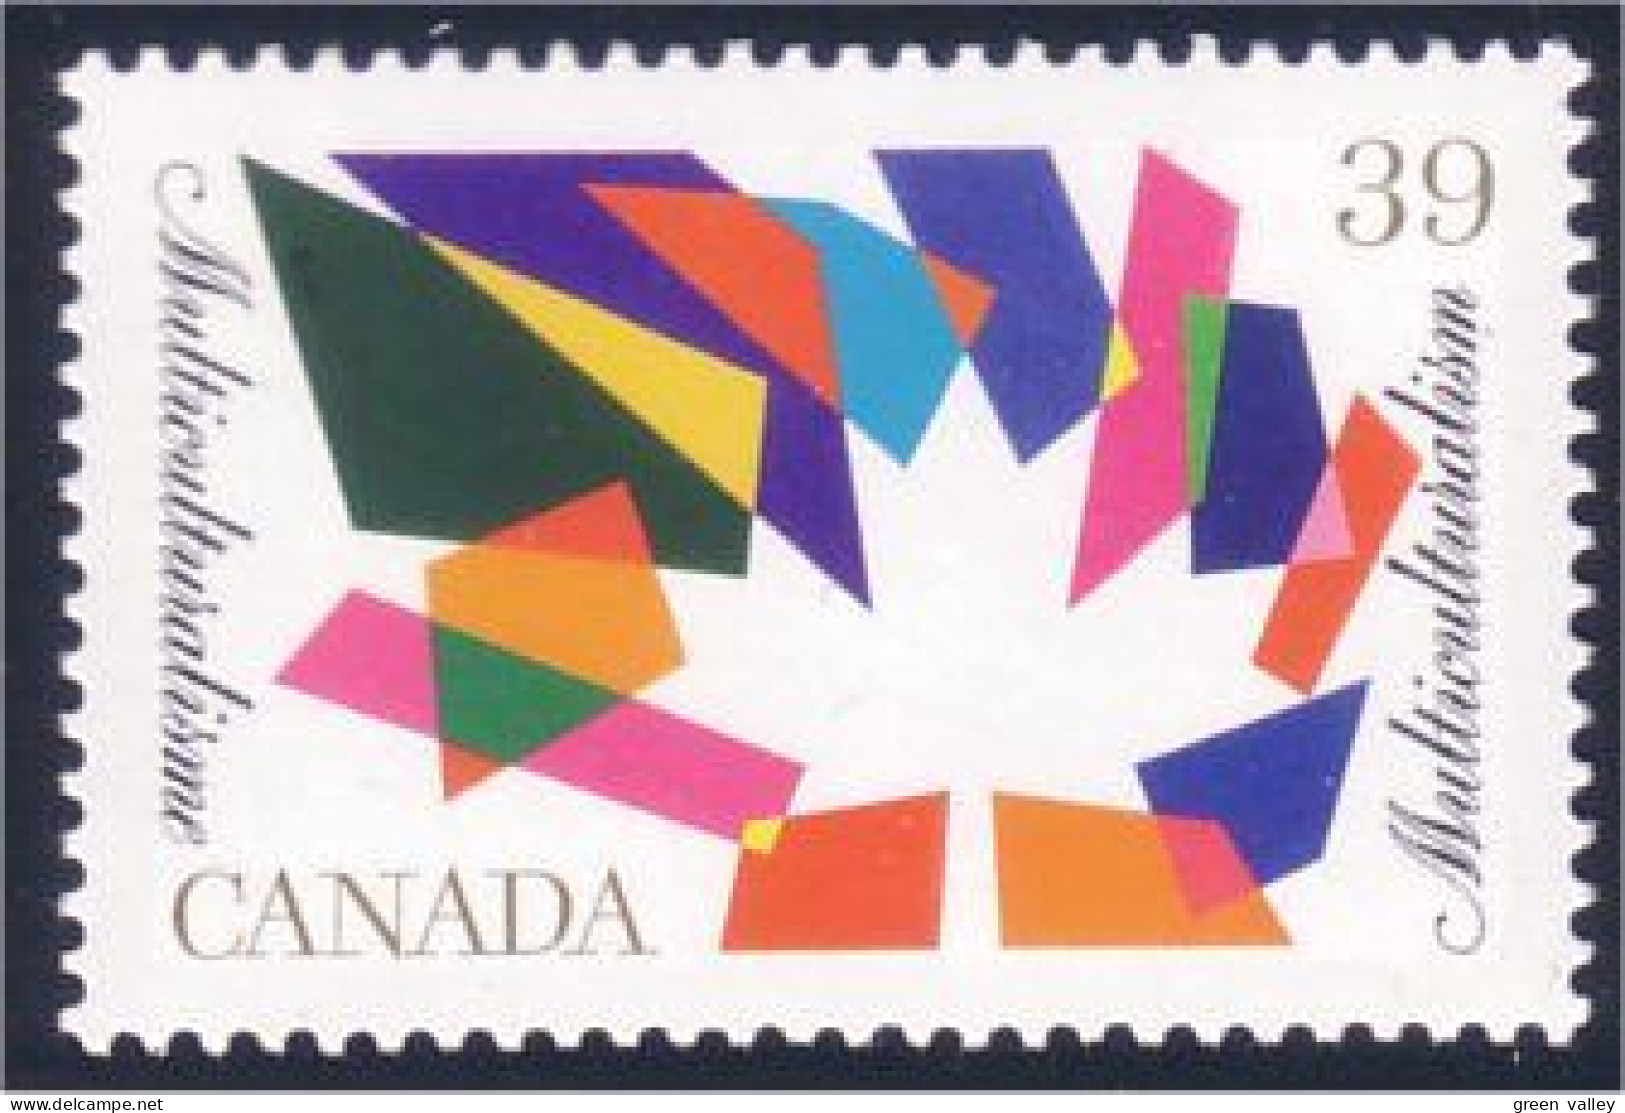 Canada Drapeau Flag MNH ** Neuf SC (C12-70b) - Neufs